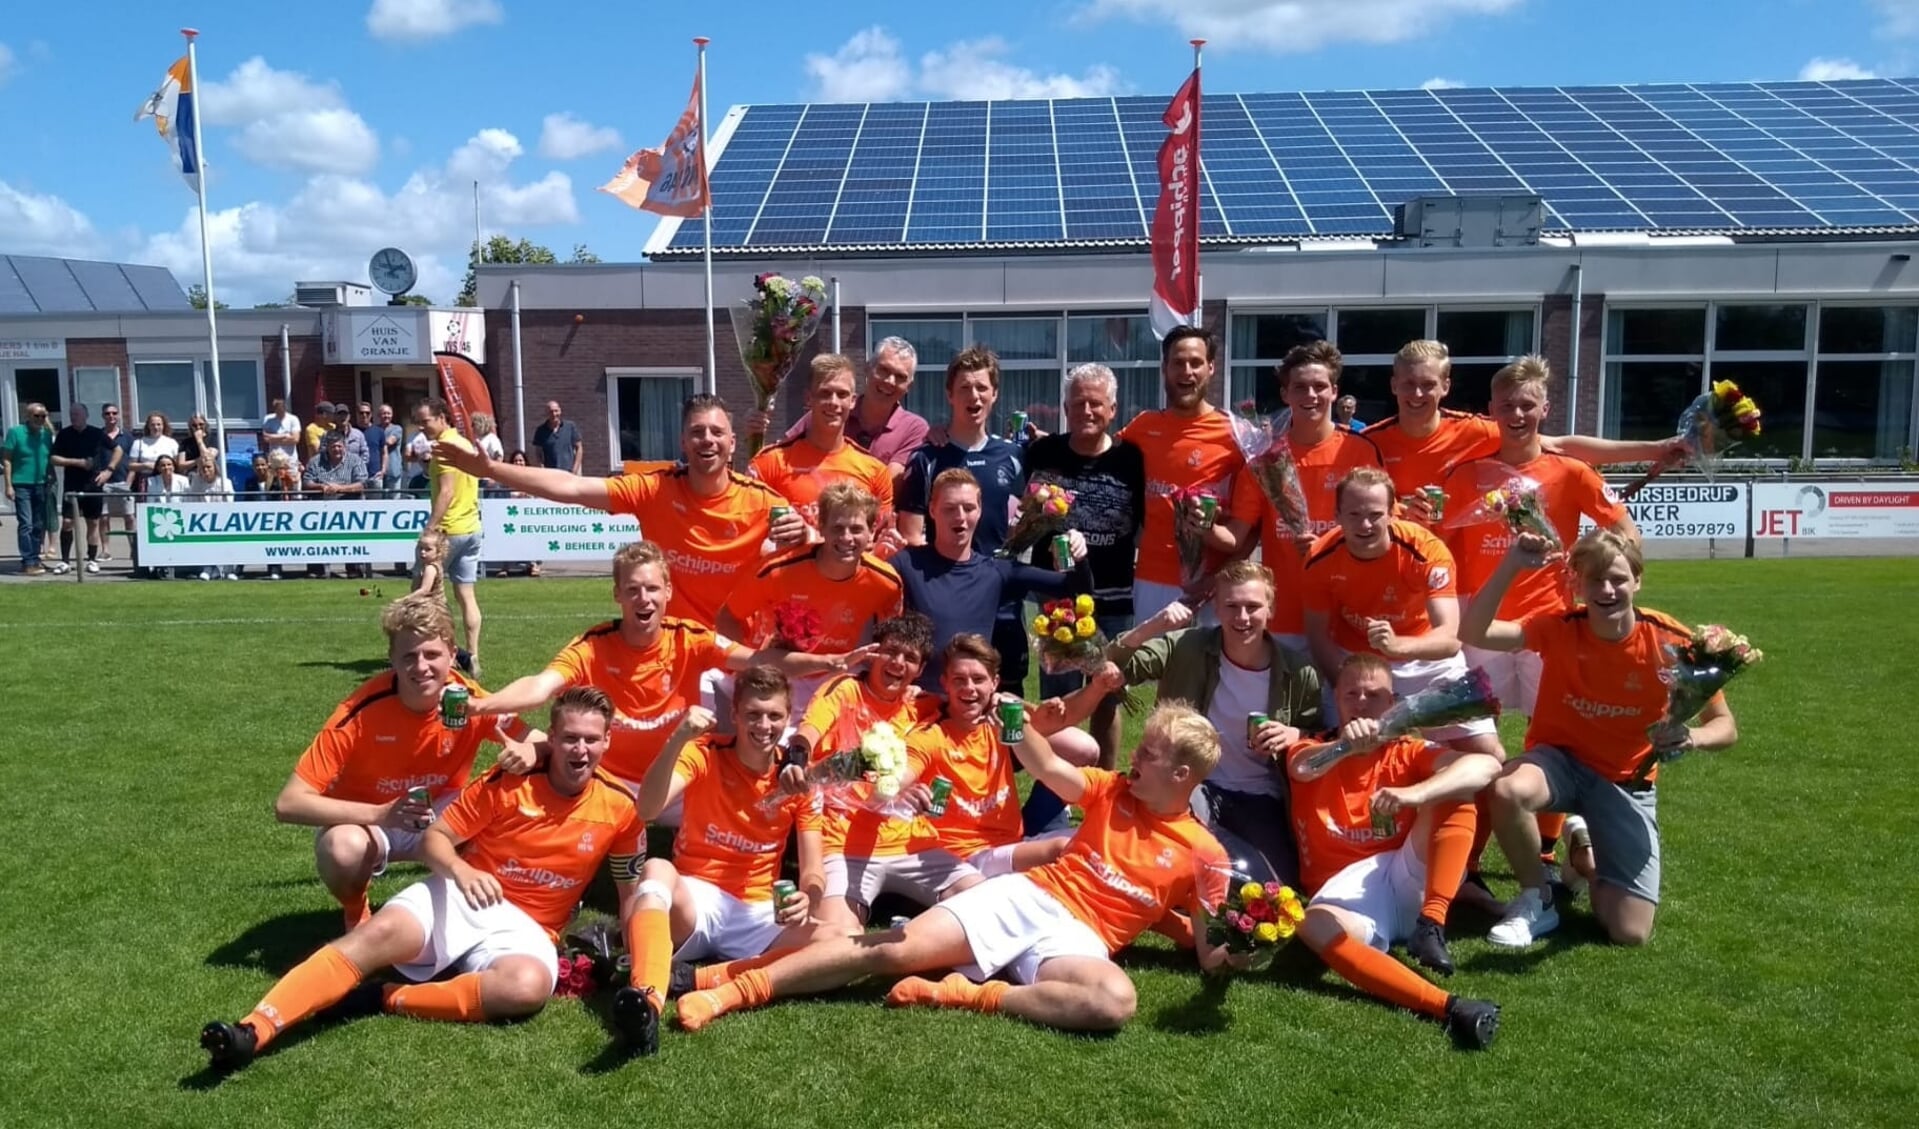 OPMEER - Het team van VVS’46 4 vieren het kampioenschap.